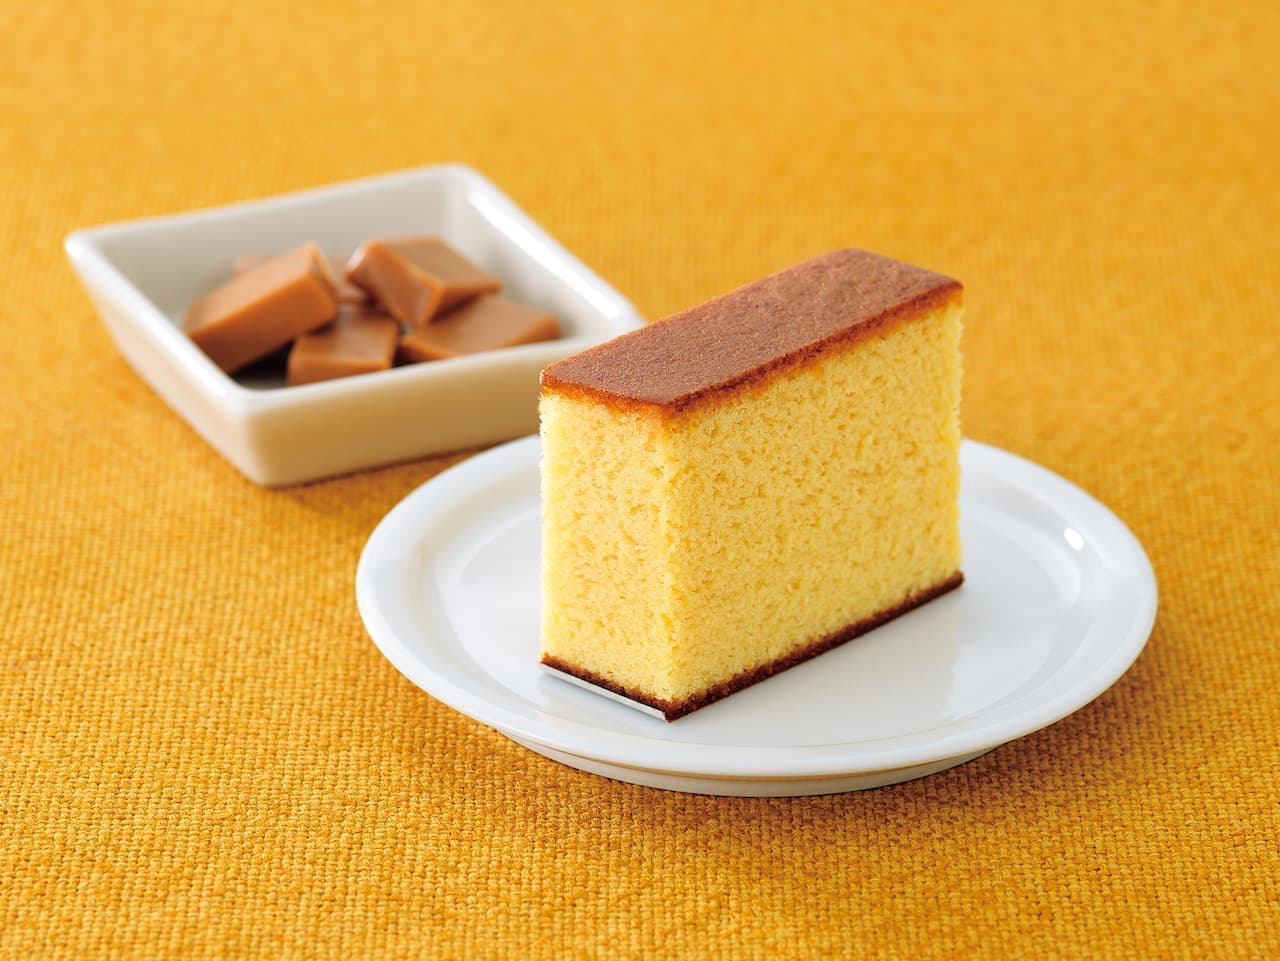 Reprinted Caramel Sponge Cake" from Bunmeido.